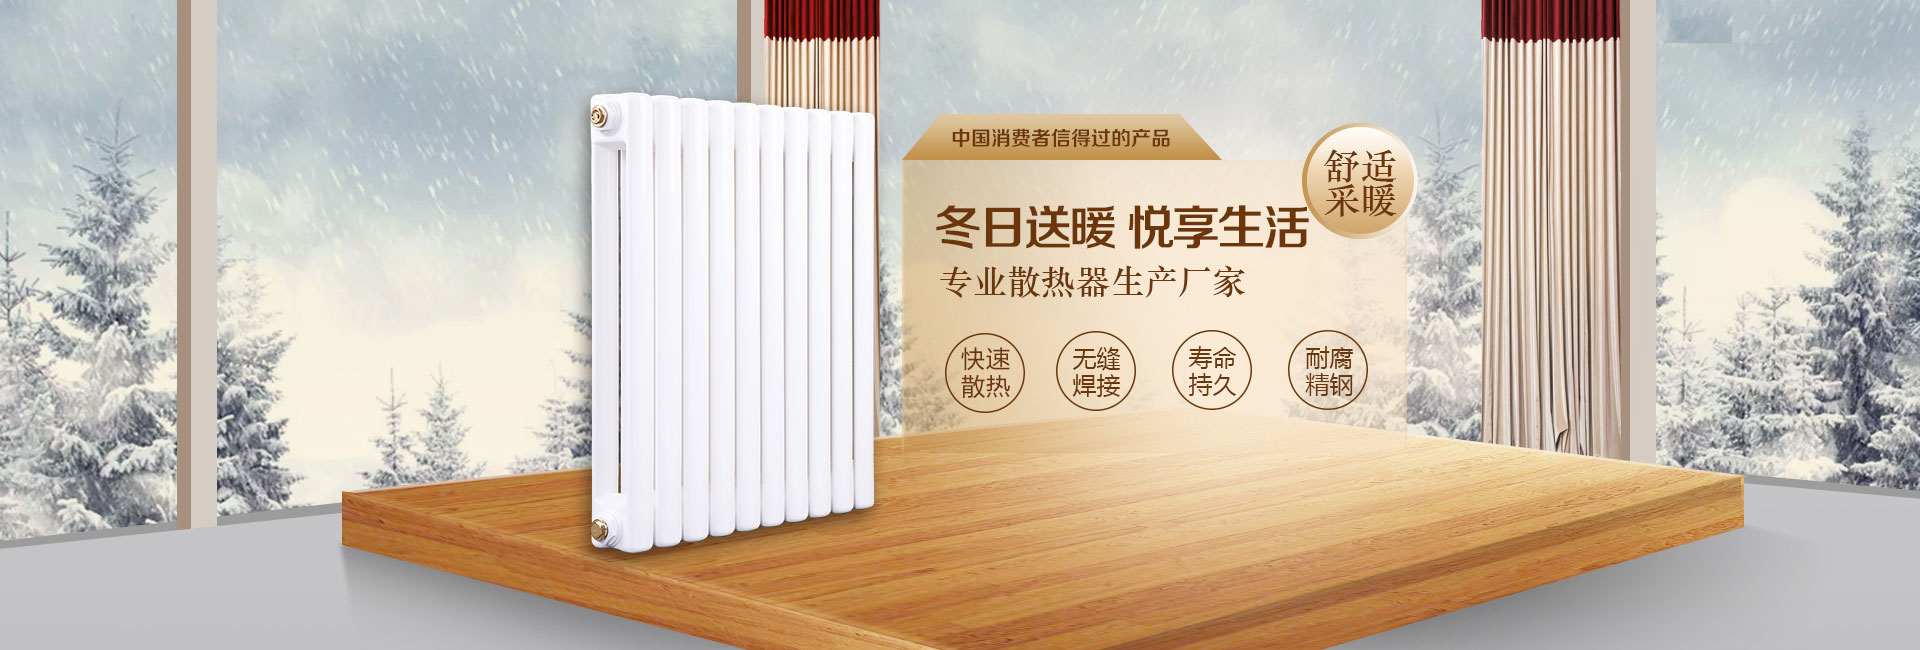 冬日慕歌(天津)暖通科技有限公司